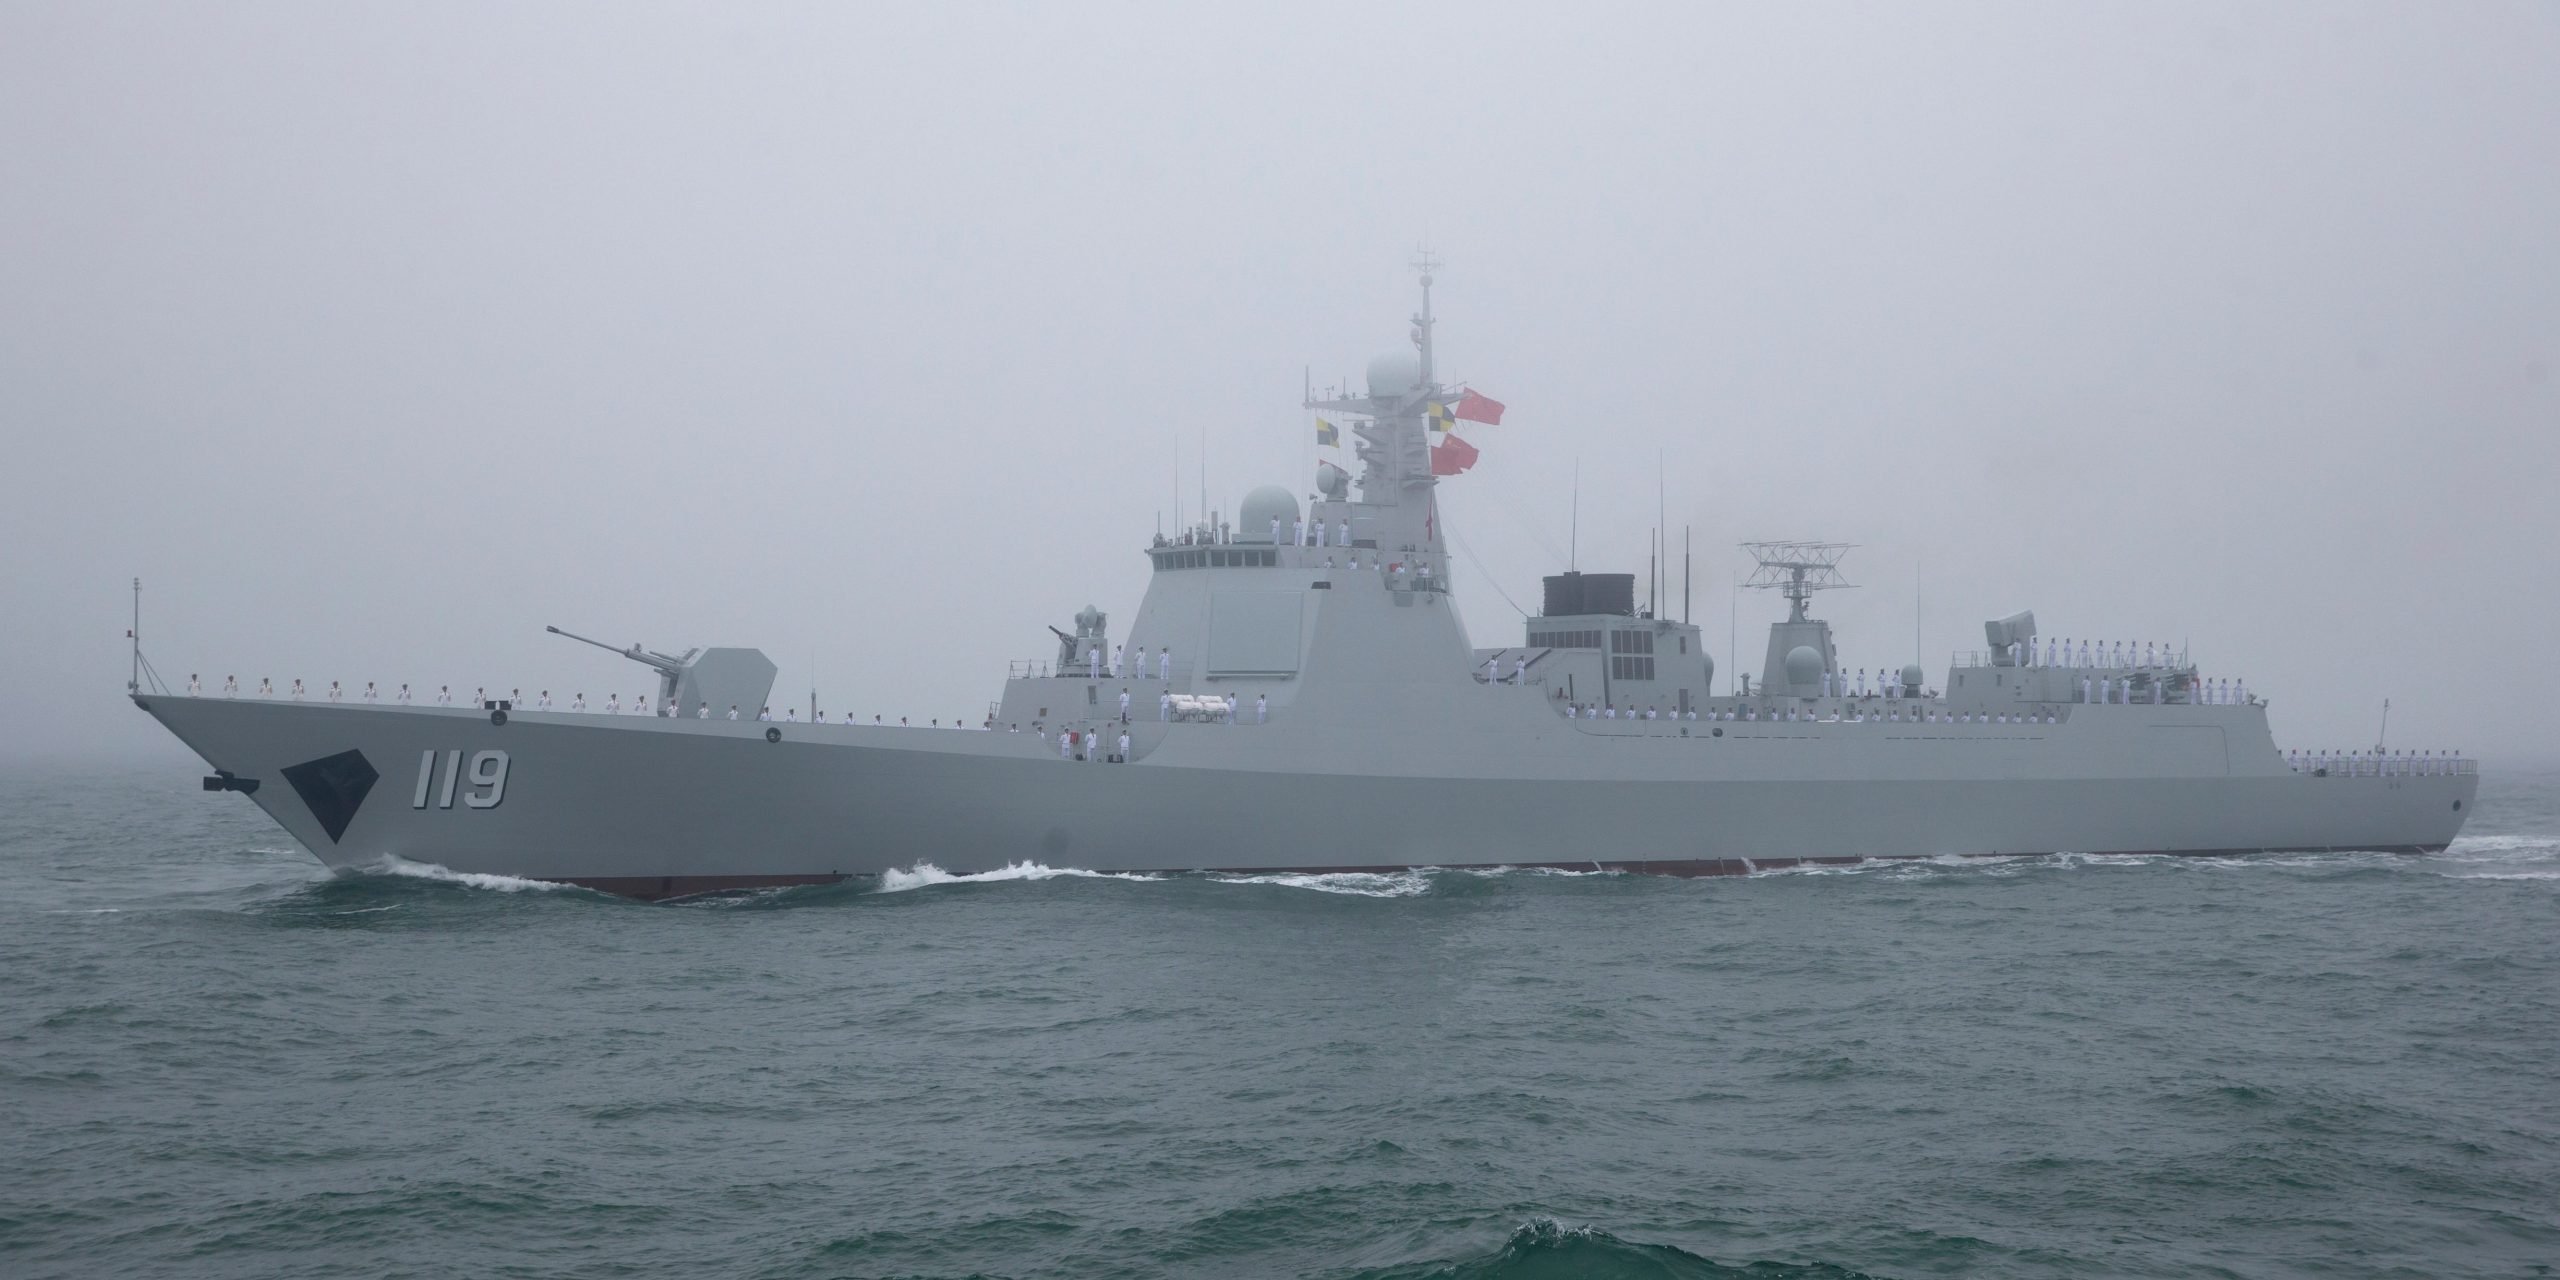 De Type 052D geleide raket destroyer Guiyang neemt deel aan een marine parade ter herdenking van de 70ste verjaardag van de oprichting van China's PLA marine in de zee bij Qingdao, in het oosten van China's provincie Shandong op 23 april 2019.